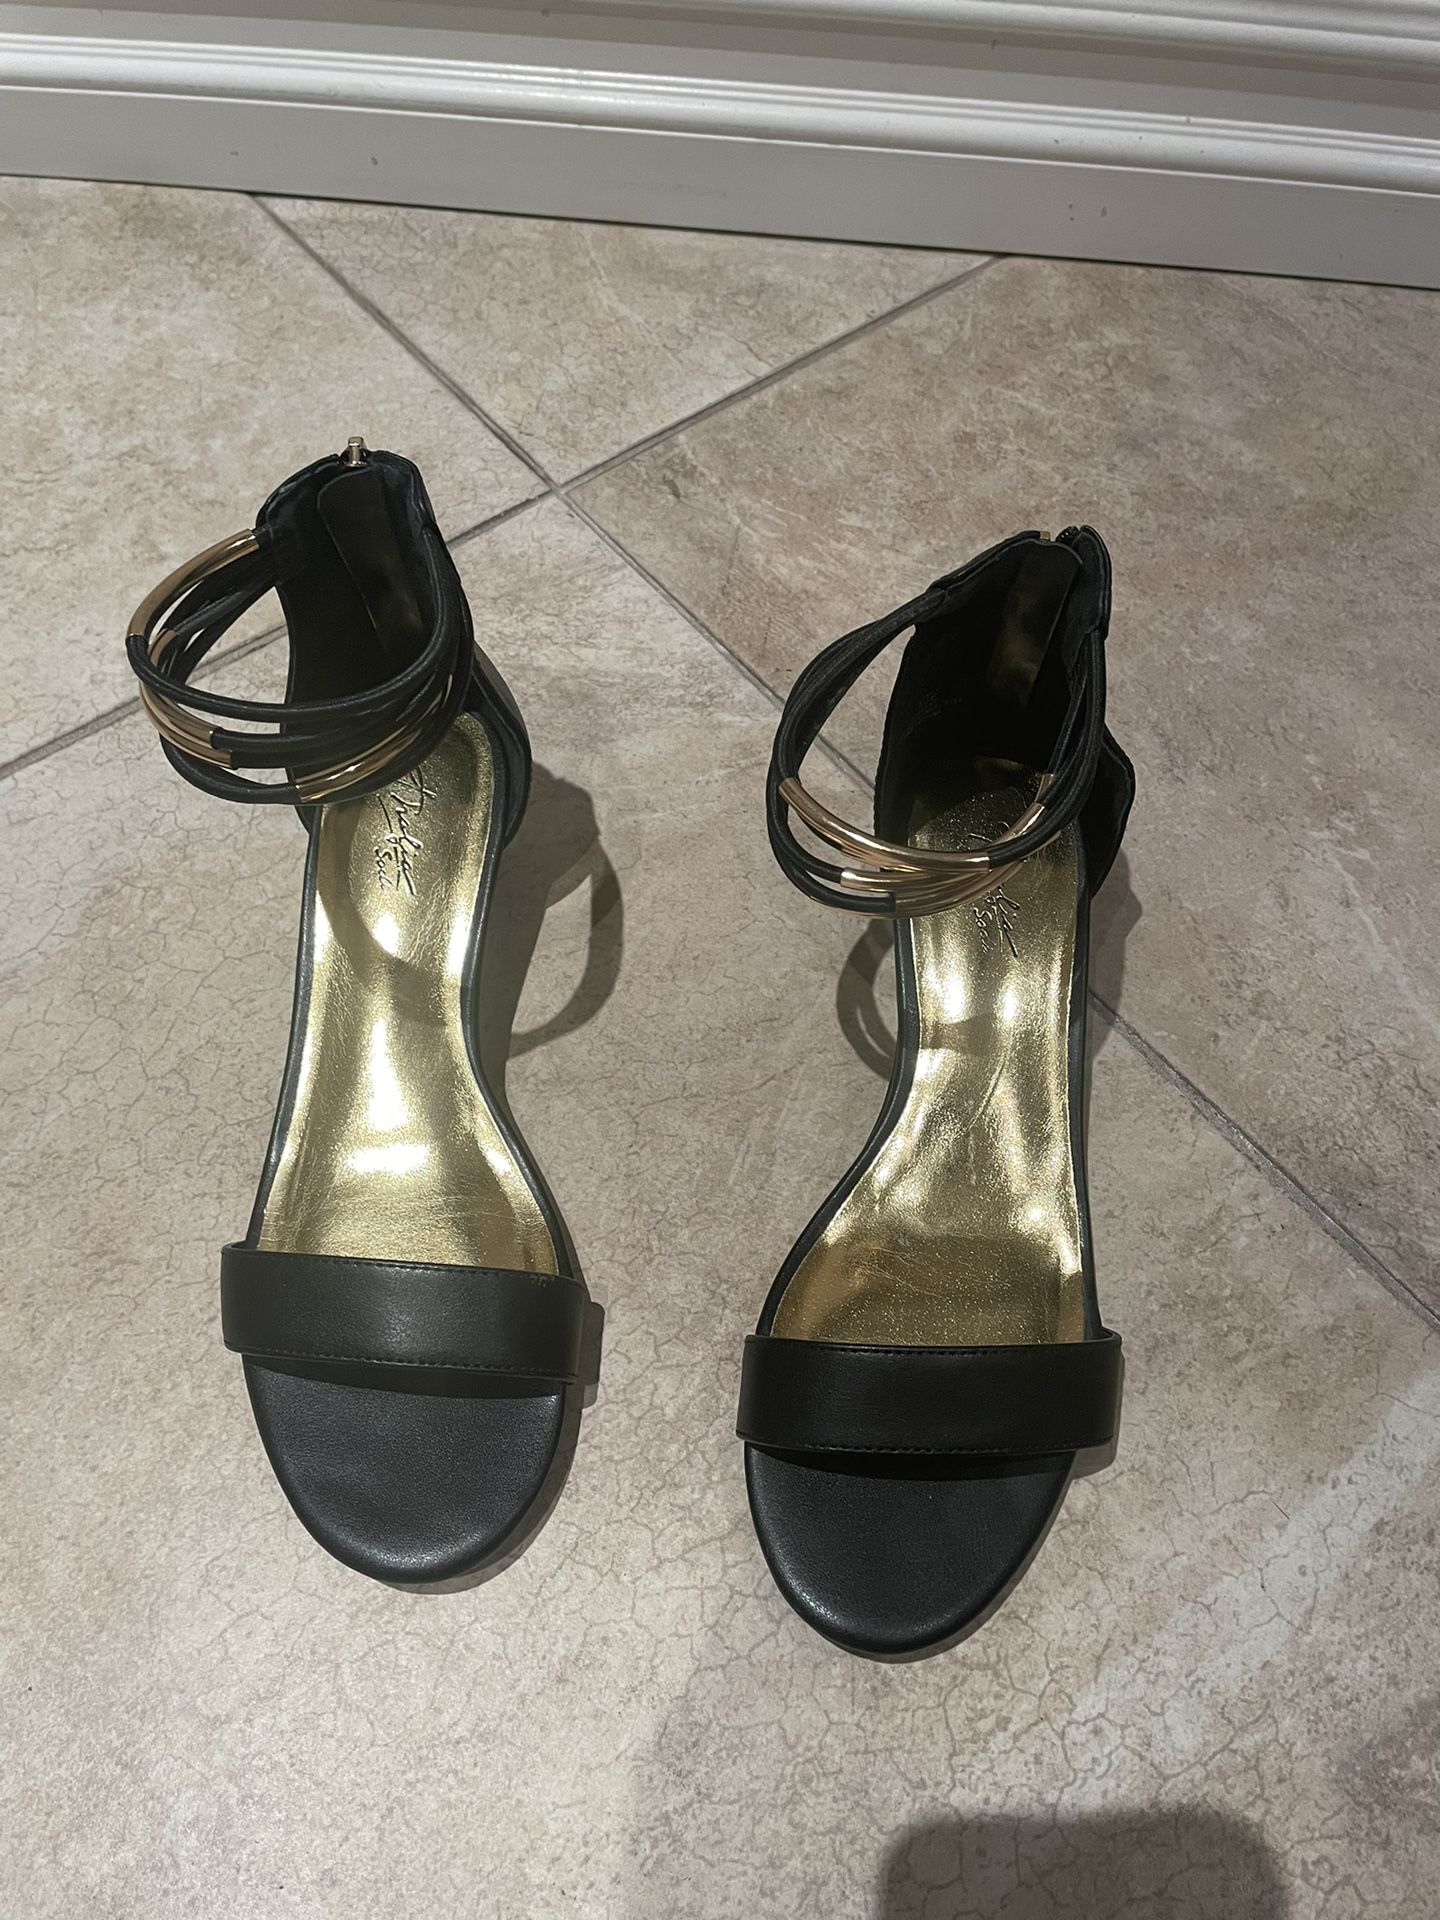 Women's Thalia Sodi Dress Sandals. Size: 8.5. Open Toe/Heel Zipper Closure. With box.